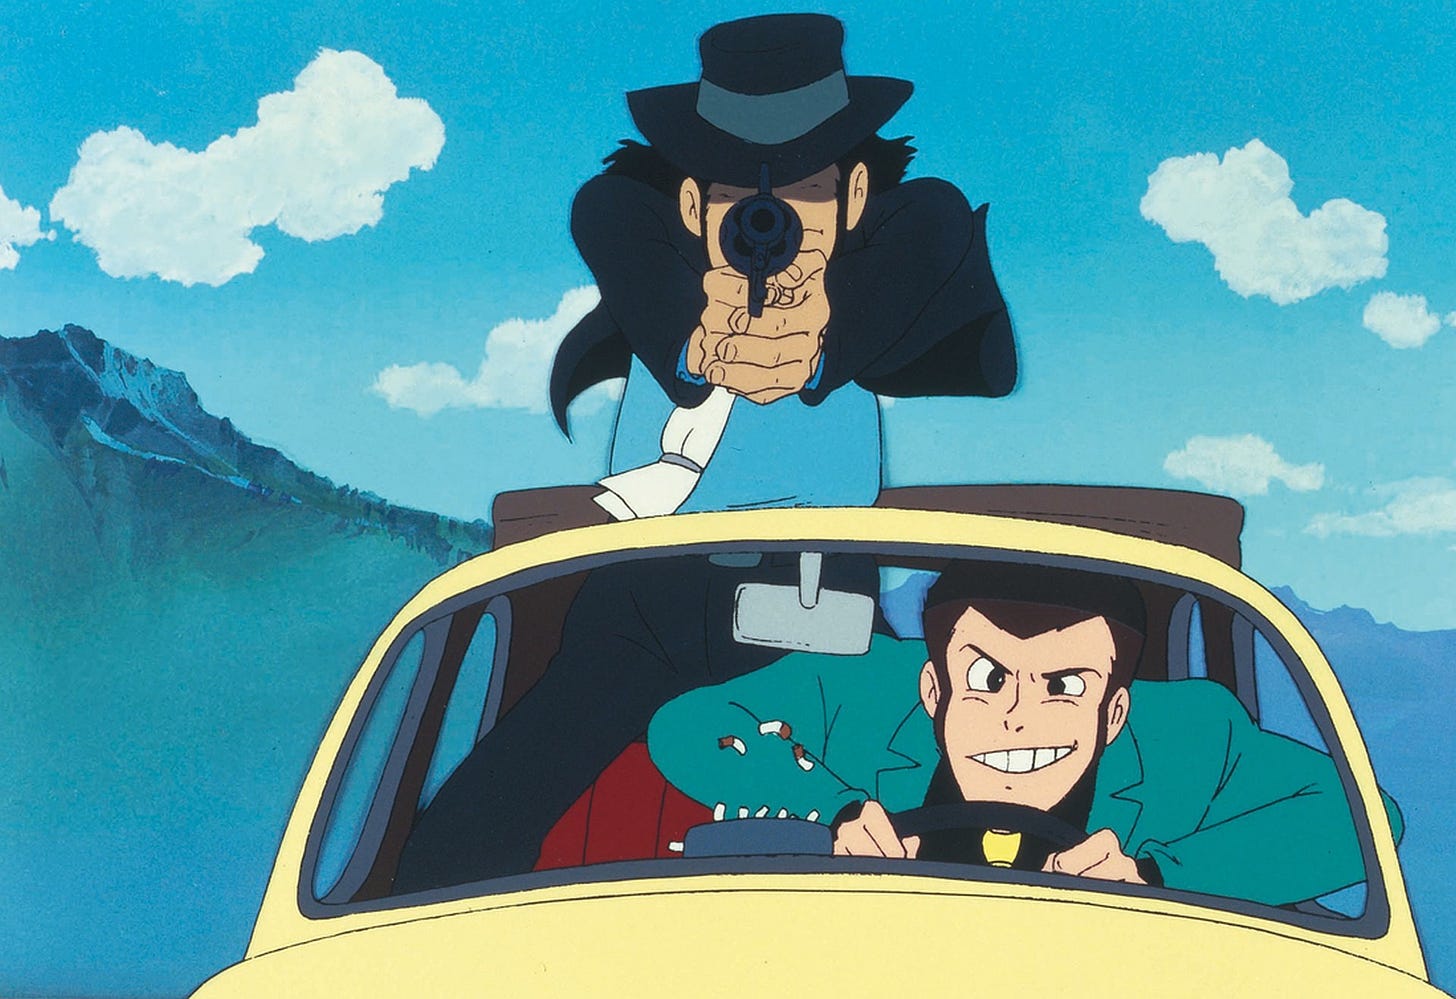 Lupin e Jigen a bordo della 500 gialla. Lupin è alla guida, mentre Jigen è in piedi, parzialmente fuori dal tettuccio, e punta una pistola davanti a sè. Sullo sfondo le montagne e il cielo limpido con qualche nuvola bianca